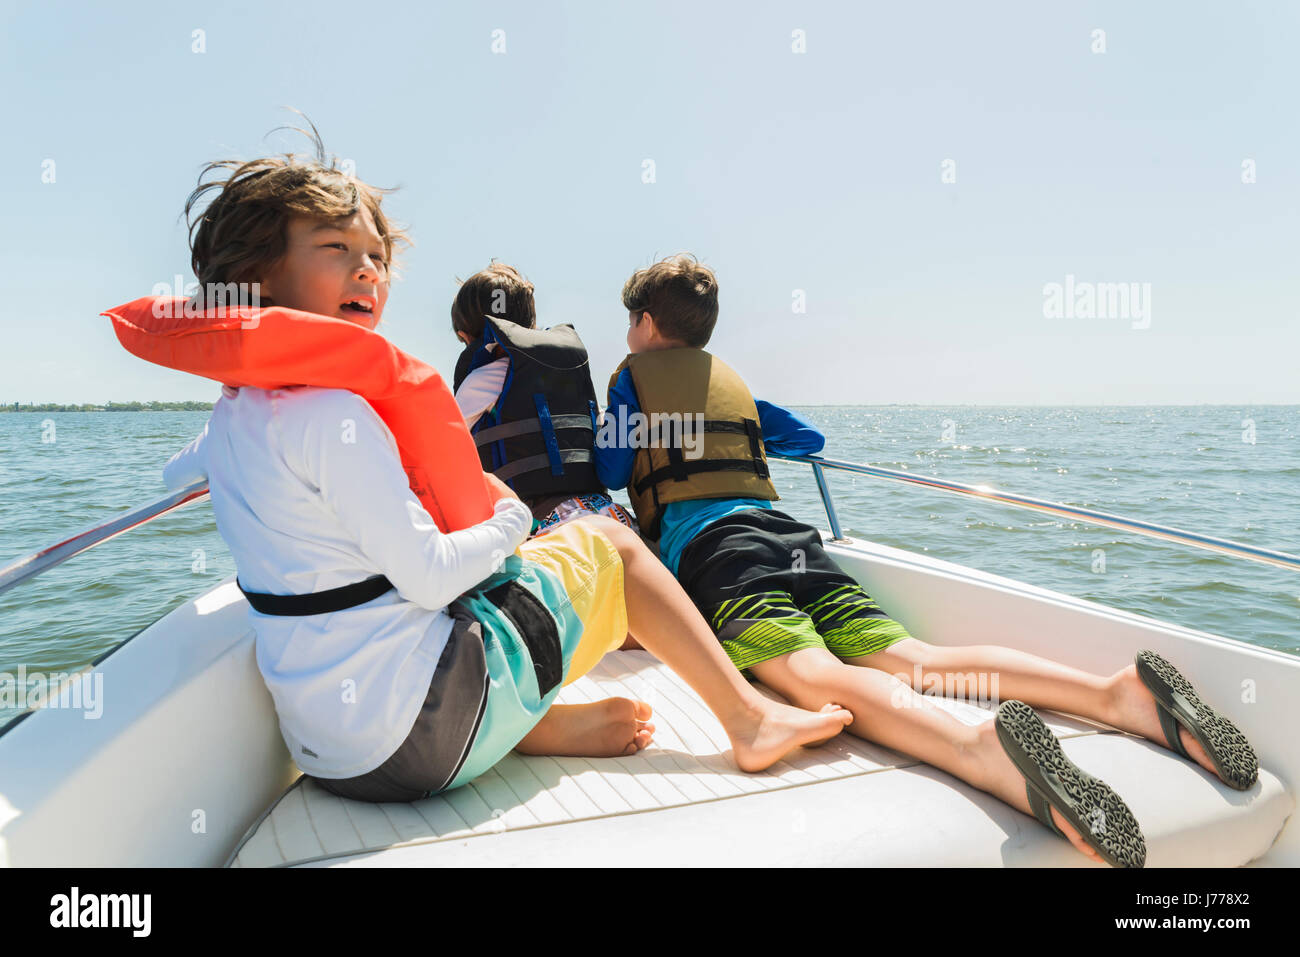 Frères portant des gilets de voyager en bateau contre un ciel clair au cours de journée ensoleillée Banque D'Images